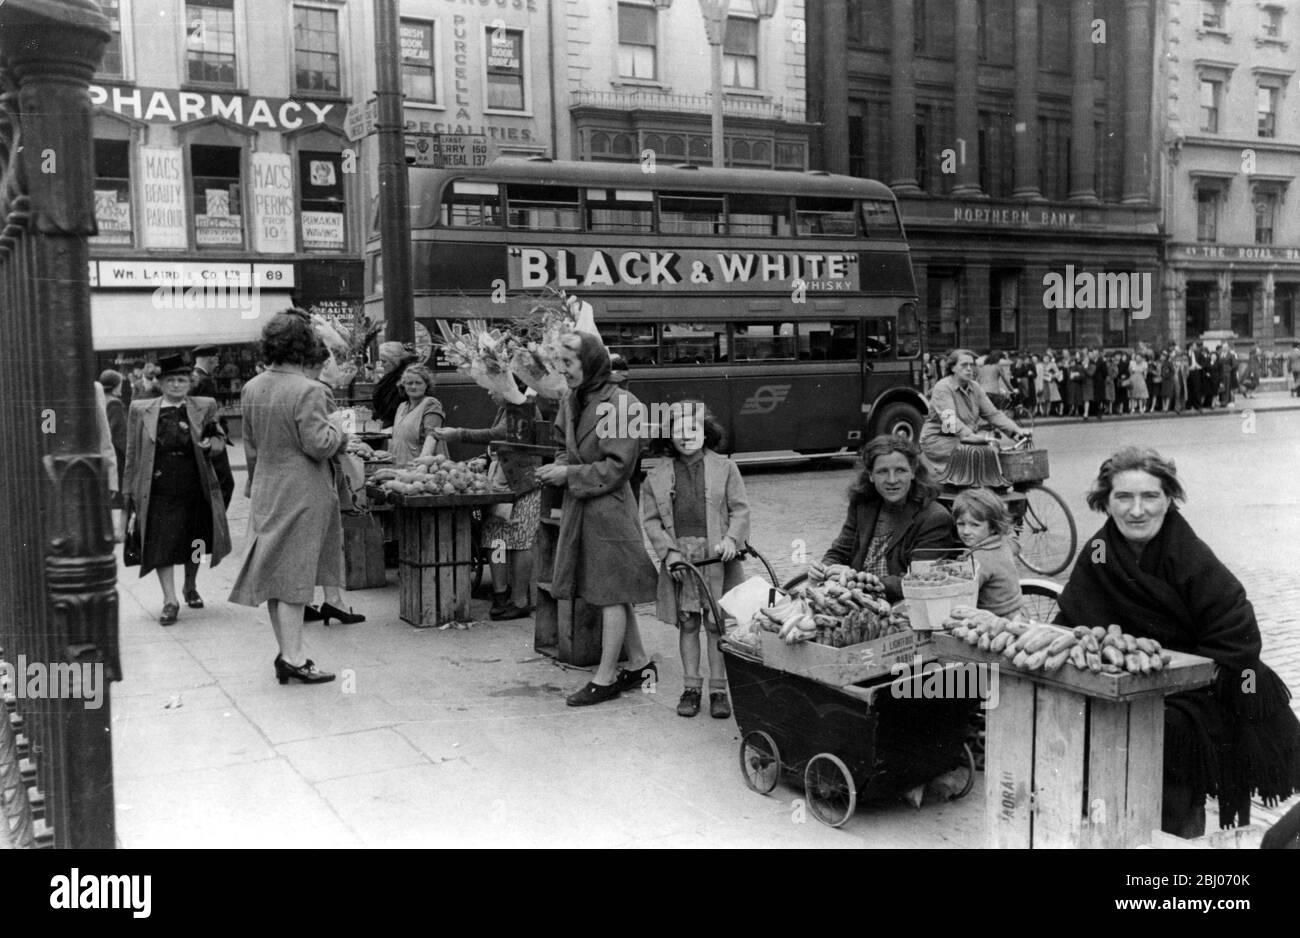 Westwood , Irlanda - non è possibile fare razionamento qui. Arance, banane e pomodori in vendita a tutti, non fare la coda e i prezzi sono a buon mercato. - 8 agosto 1946 Foto Stock